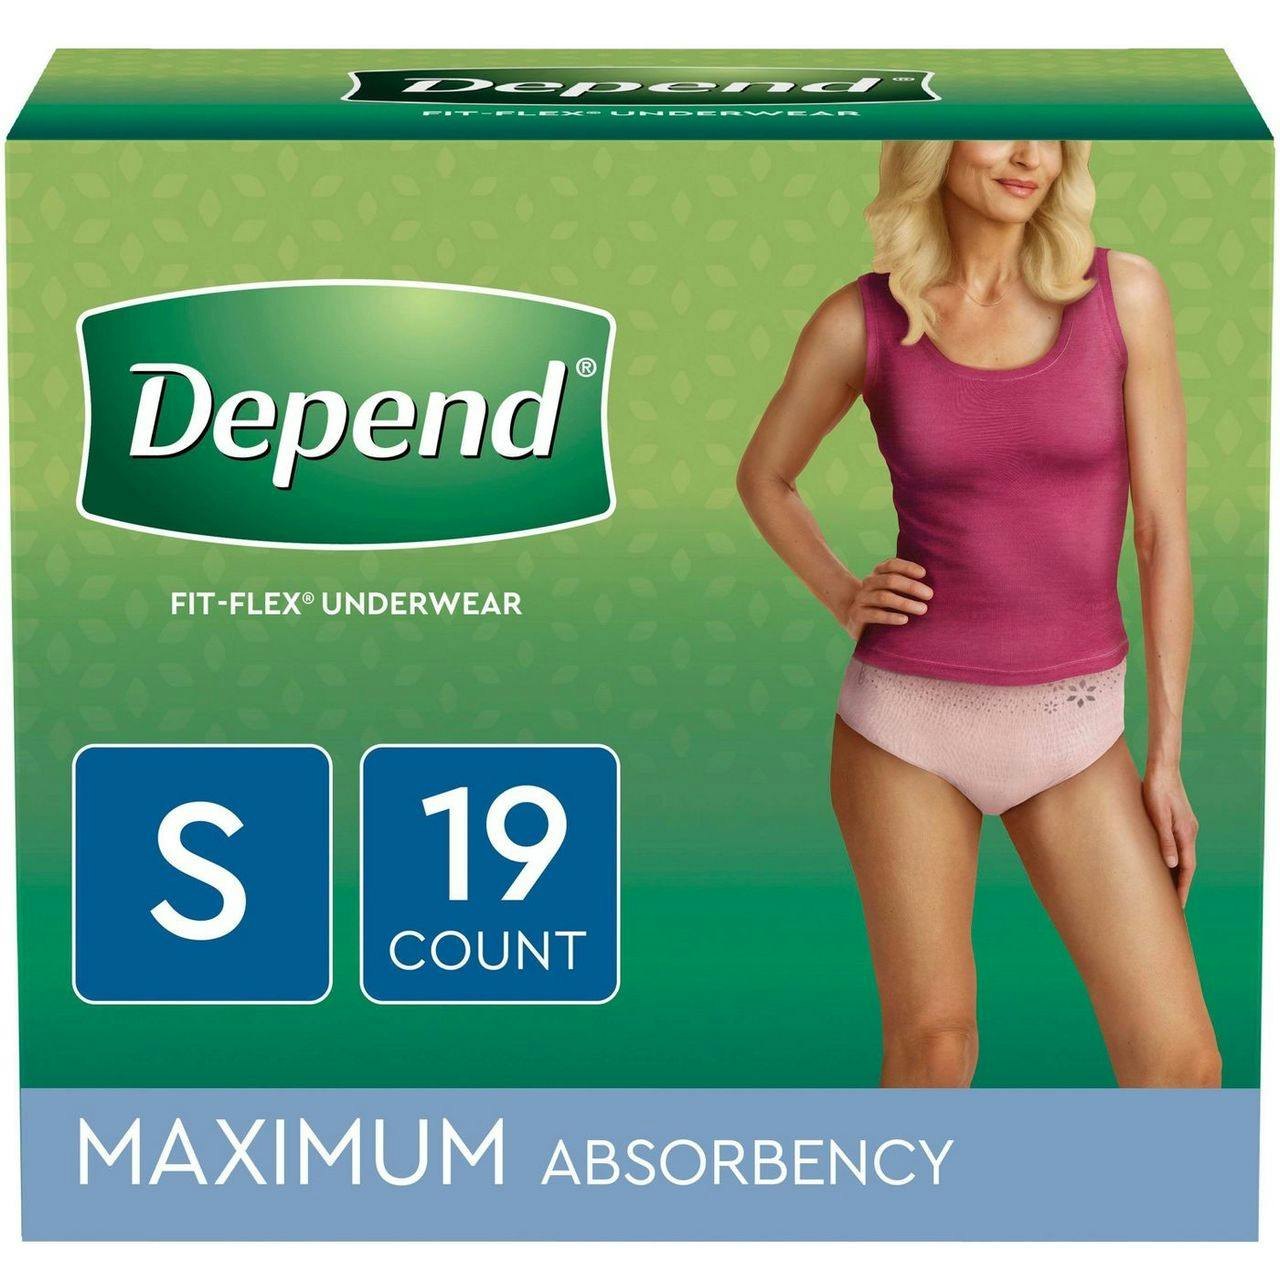 Depend Fit-Flex Pull-Up Underwear for Women